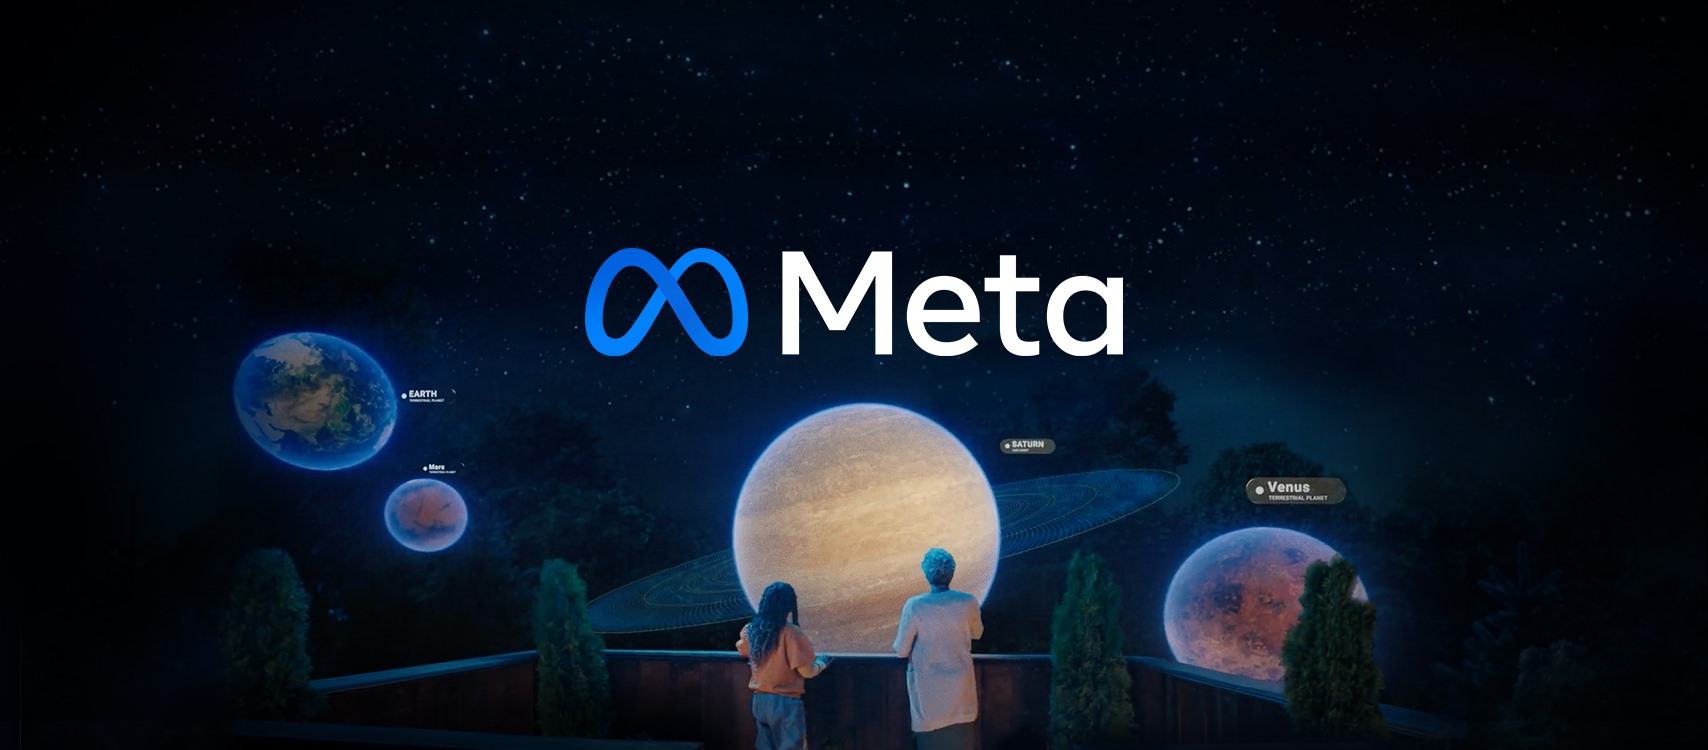 Meta sẽ là công ty sở hữu các ứng dụng mạng xã hội như Facebook, Instagram